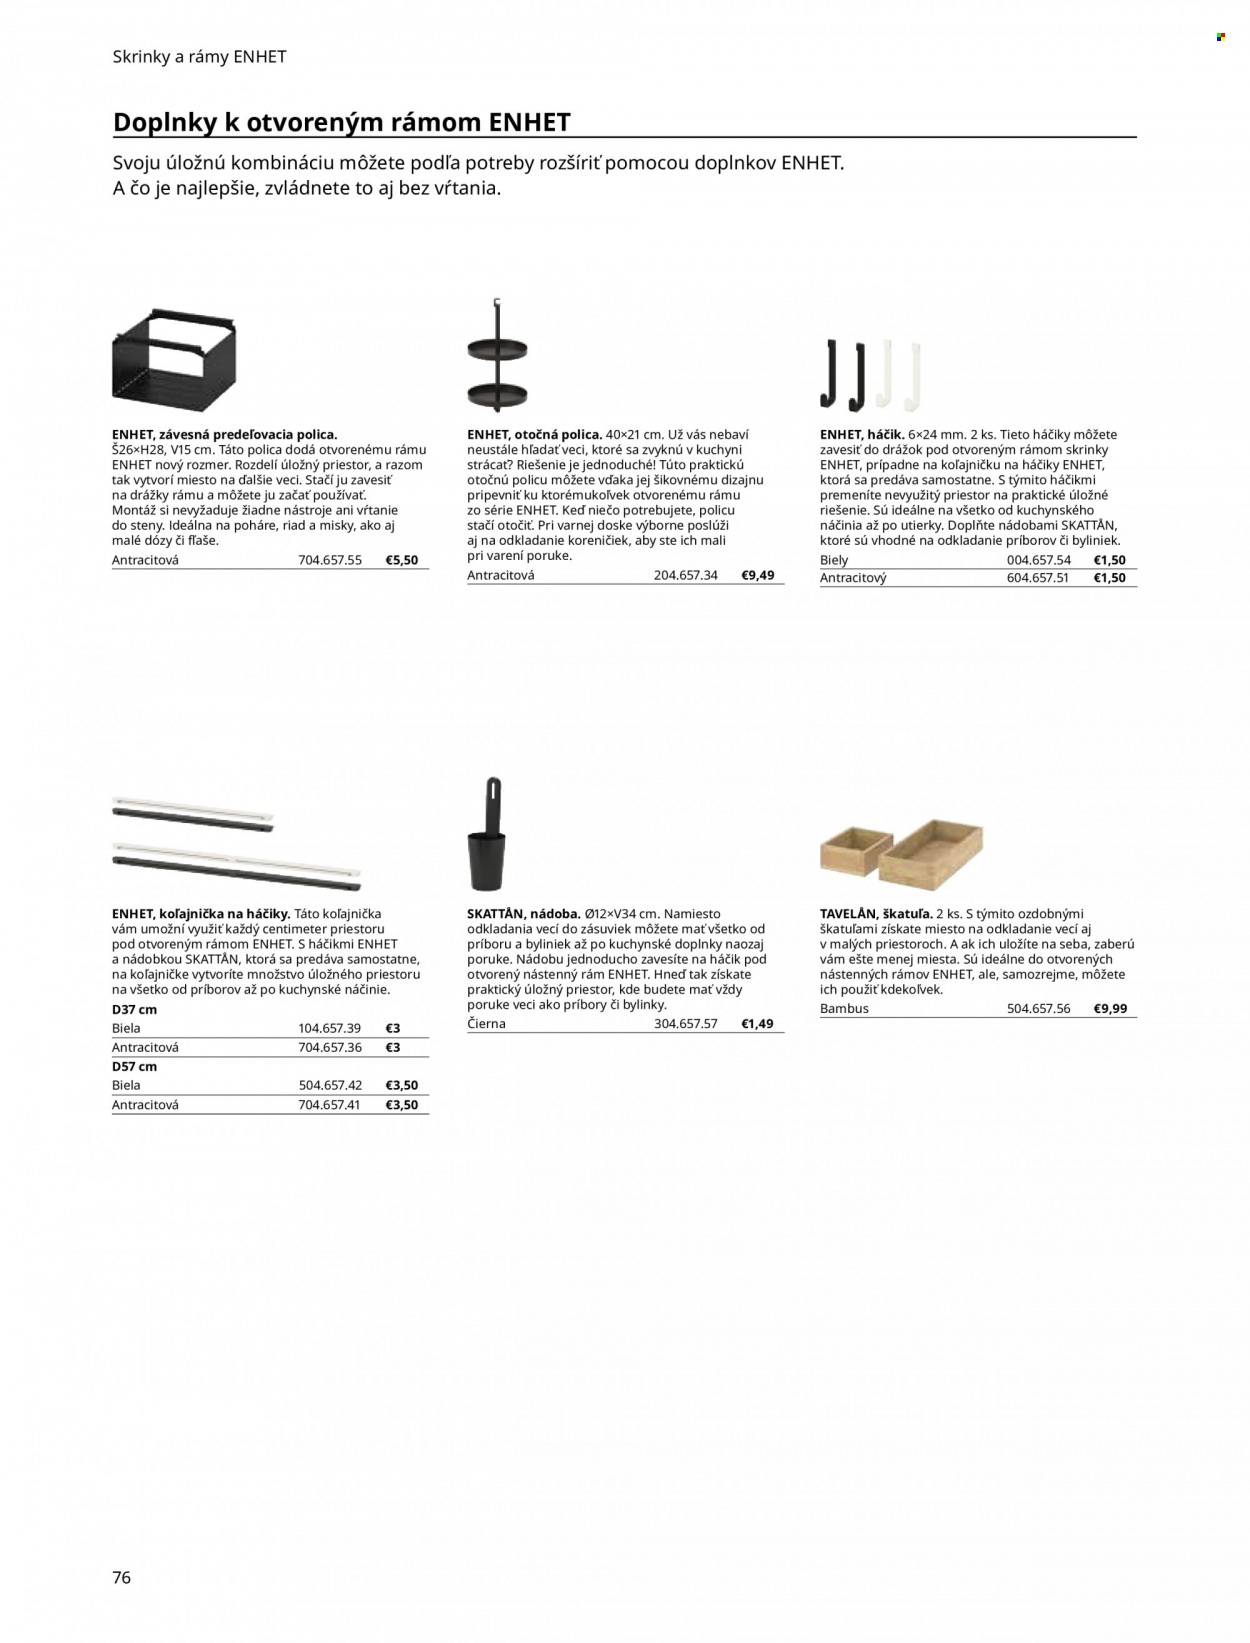 Leták IKEA - Produkty v akcii - nádoba, háčik, pohár, príbor, miska, utierka, polica, bylinky. Strana 76.